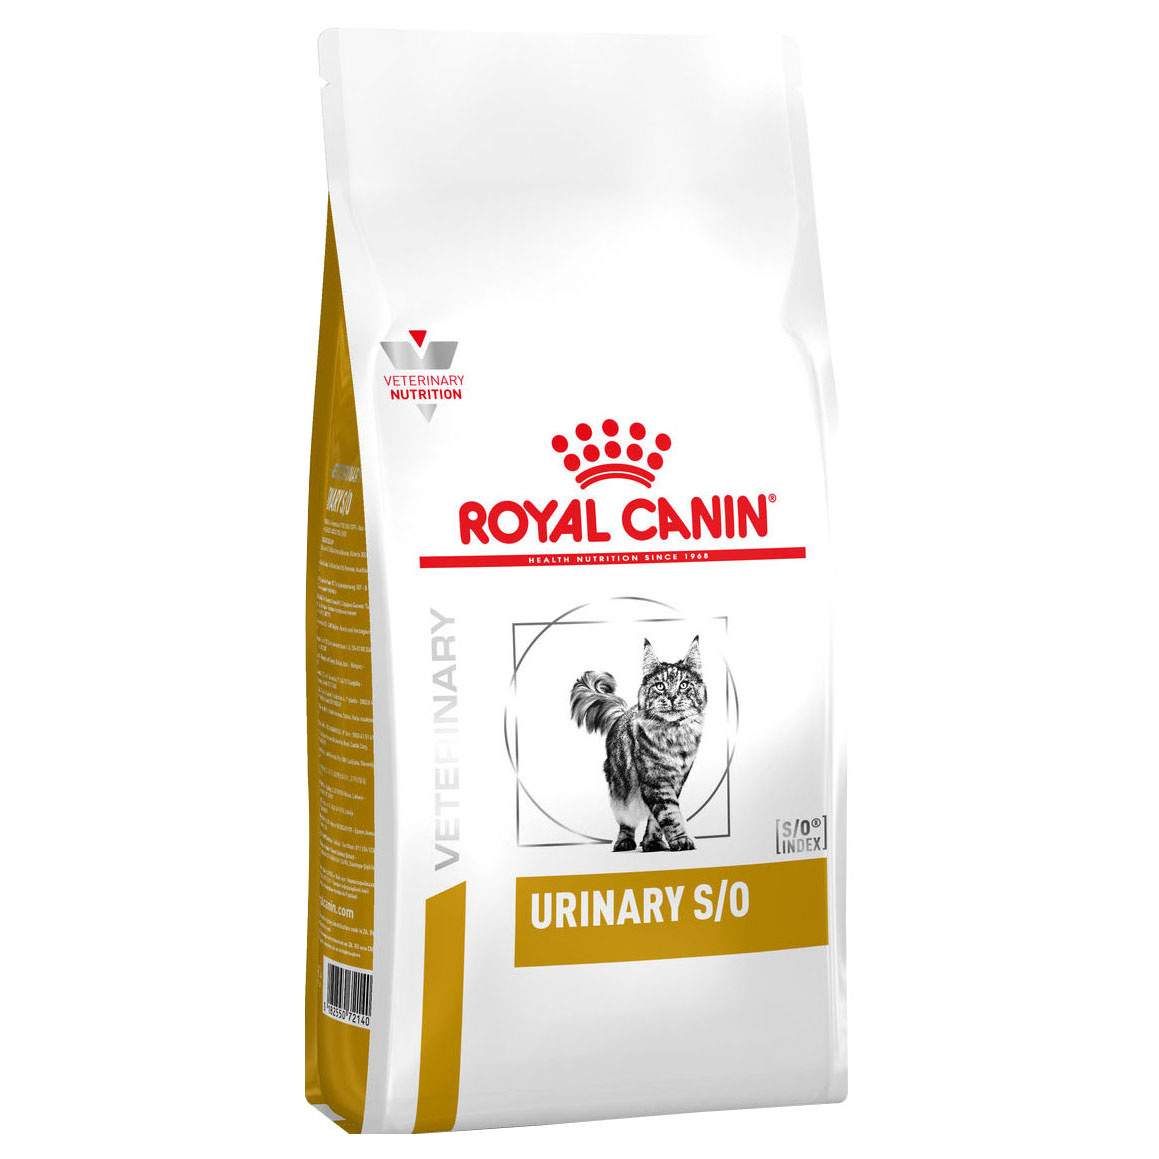 Royal Canin Urinary S/O LP34 корм для кошек при заболеваниях мочевыделительной системы (400 гр) от зоомагазина Дино Зоо